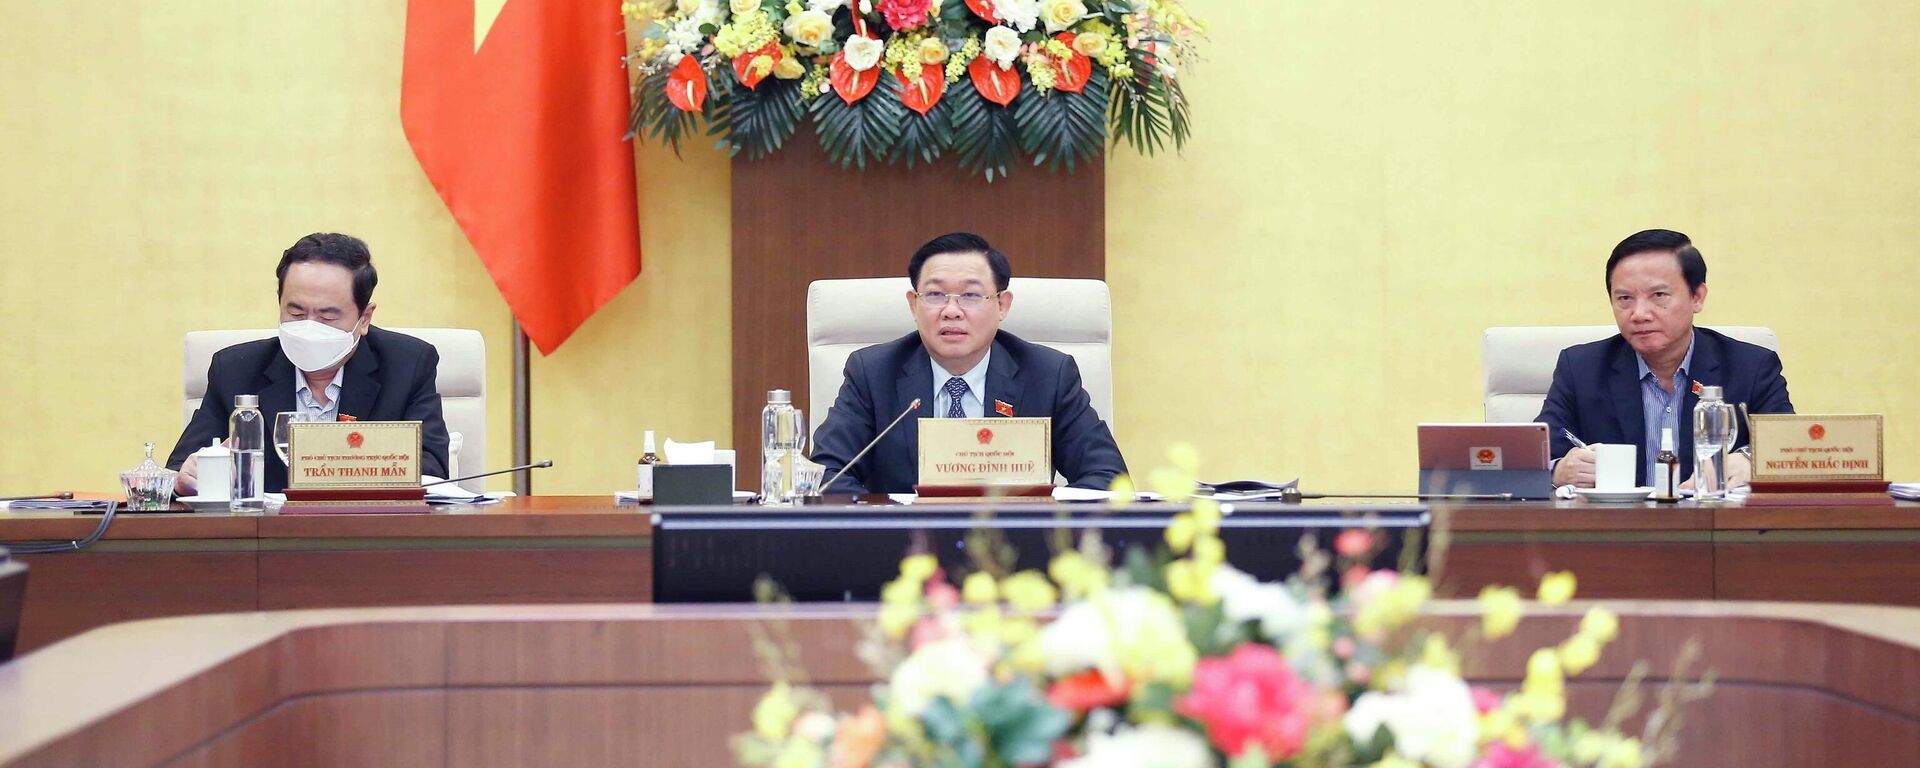 Chủ tịch Quốc hội Vương Đình Huệ điều hành phiên họp về Chương trình xây dựng luật, pháp lệnh năm 2022 - Sputnik Việt Nam, 1920, 23.11.2021